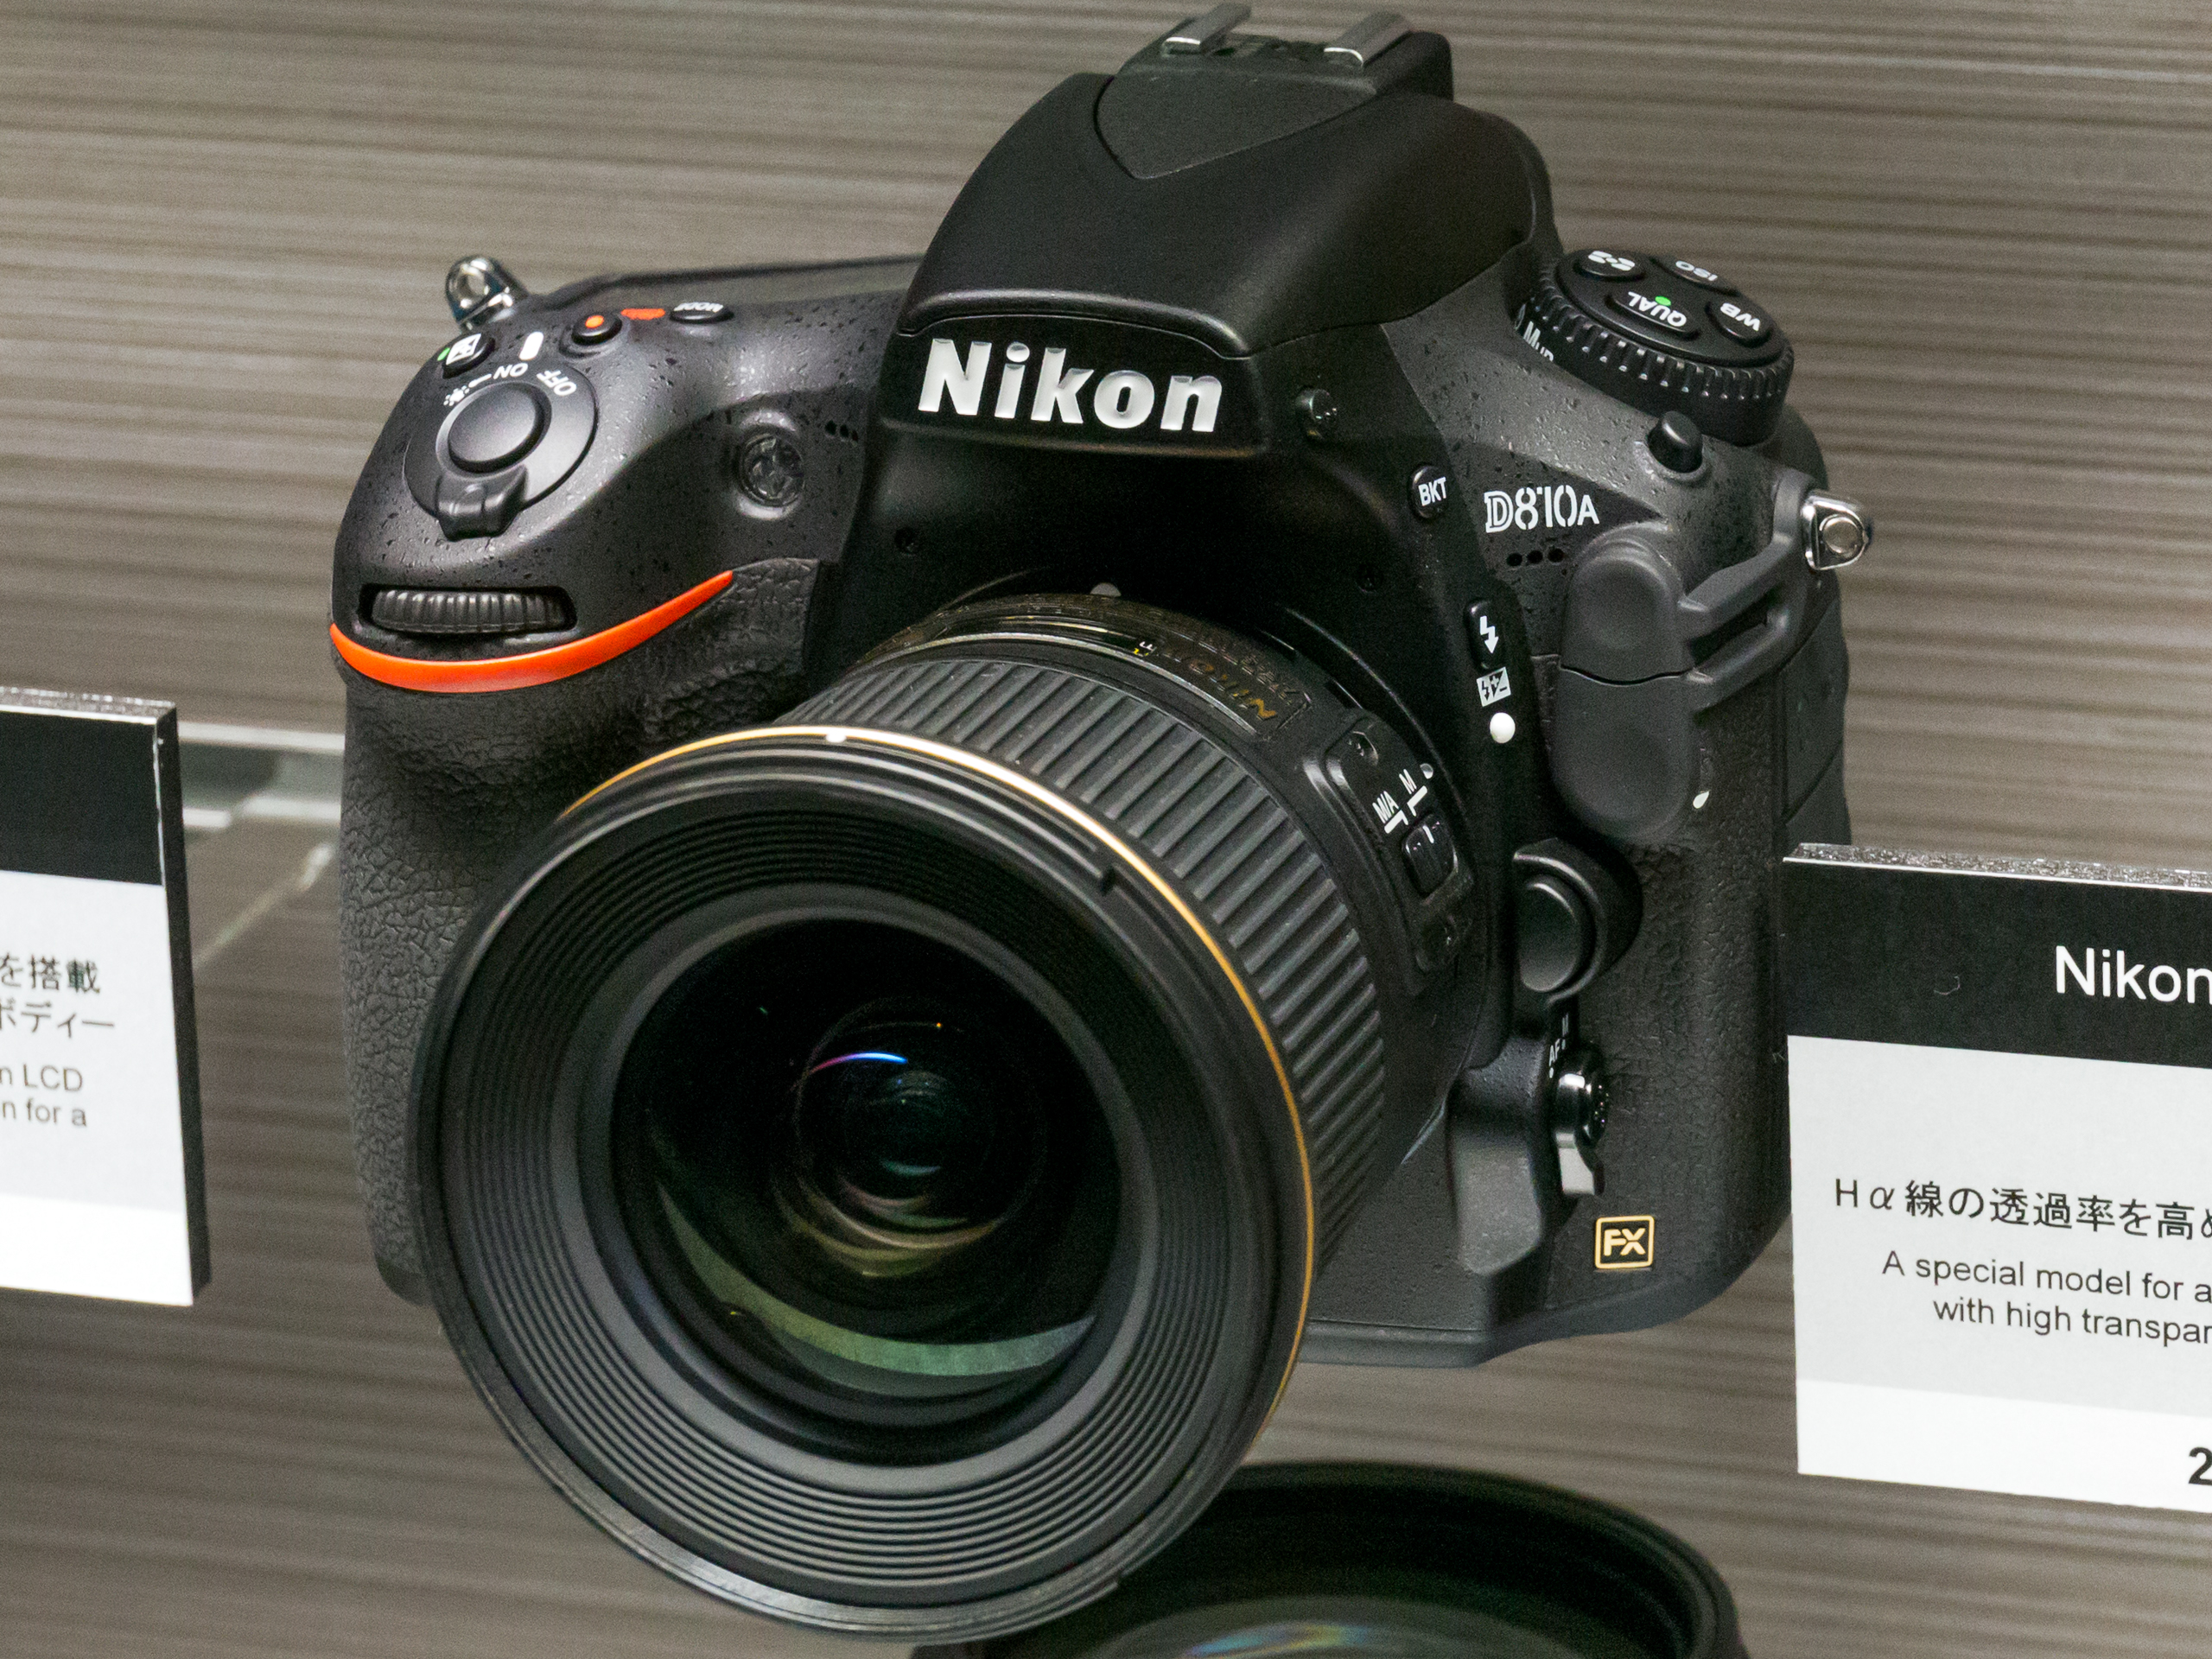 Nikon D810A front-left 2016 Nikon Museum